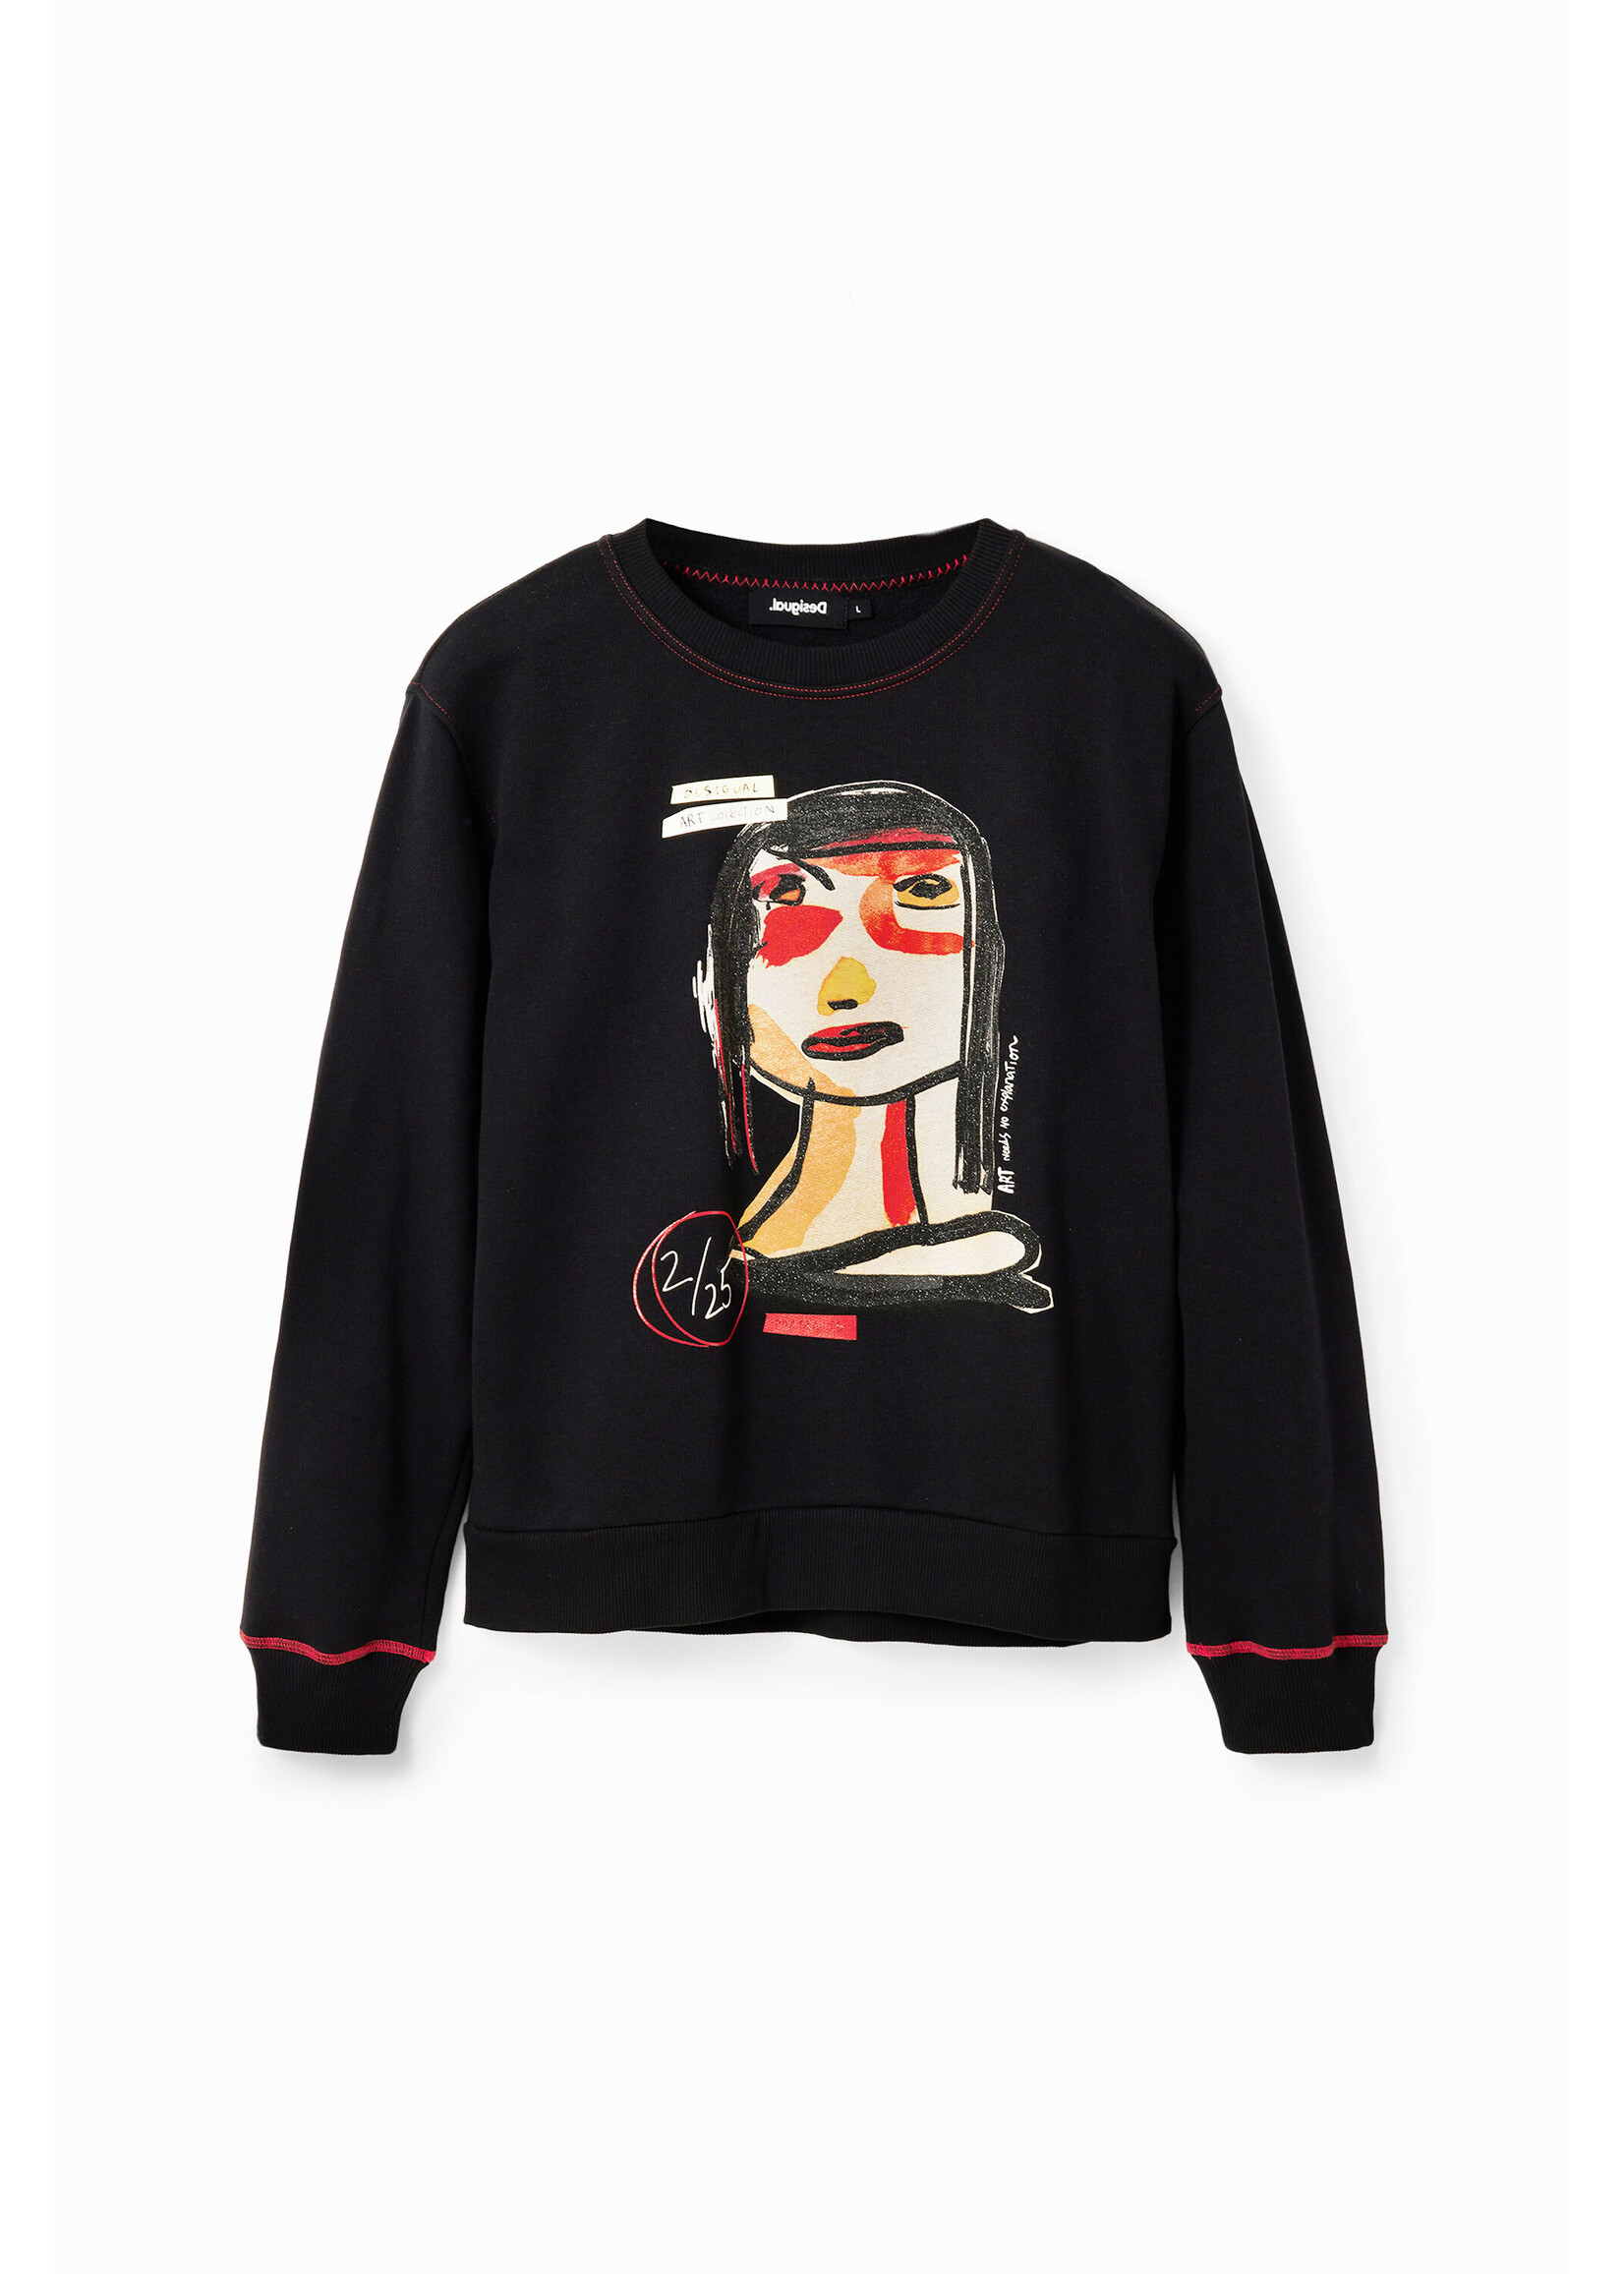 DESIGUAL Women's arty face sweatshirt